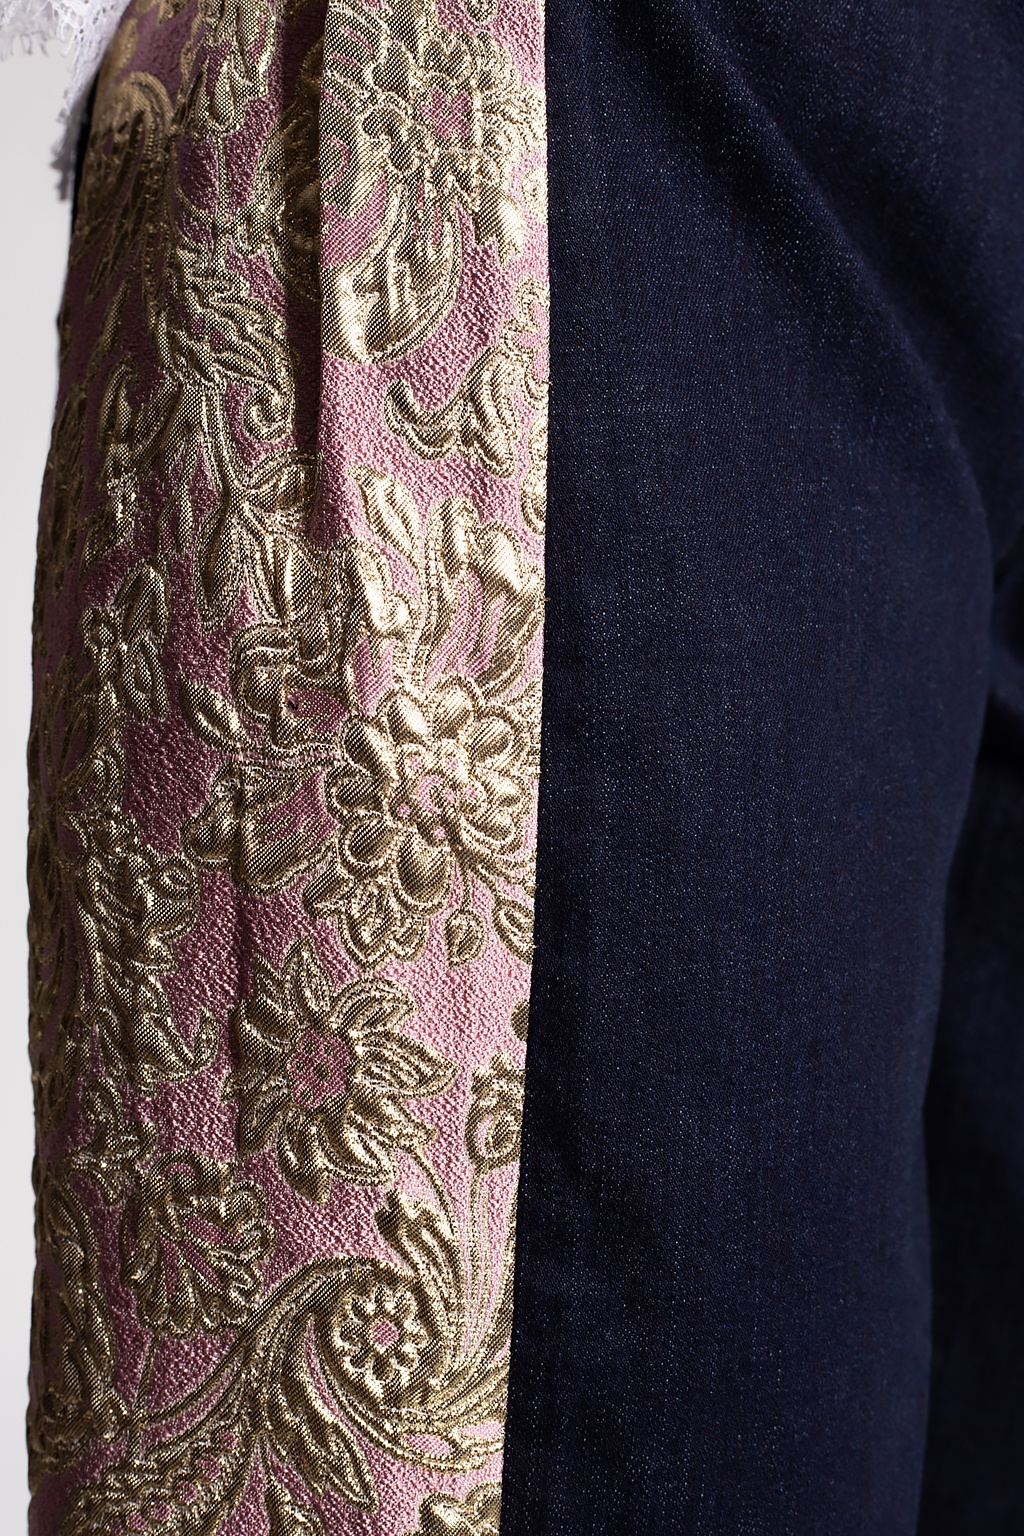 Dolce & Gabbana Jeans with decorative appliqué